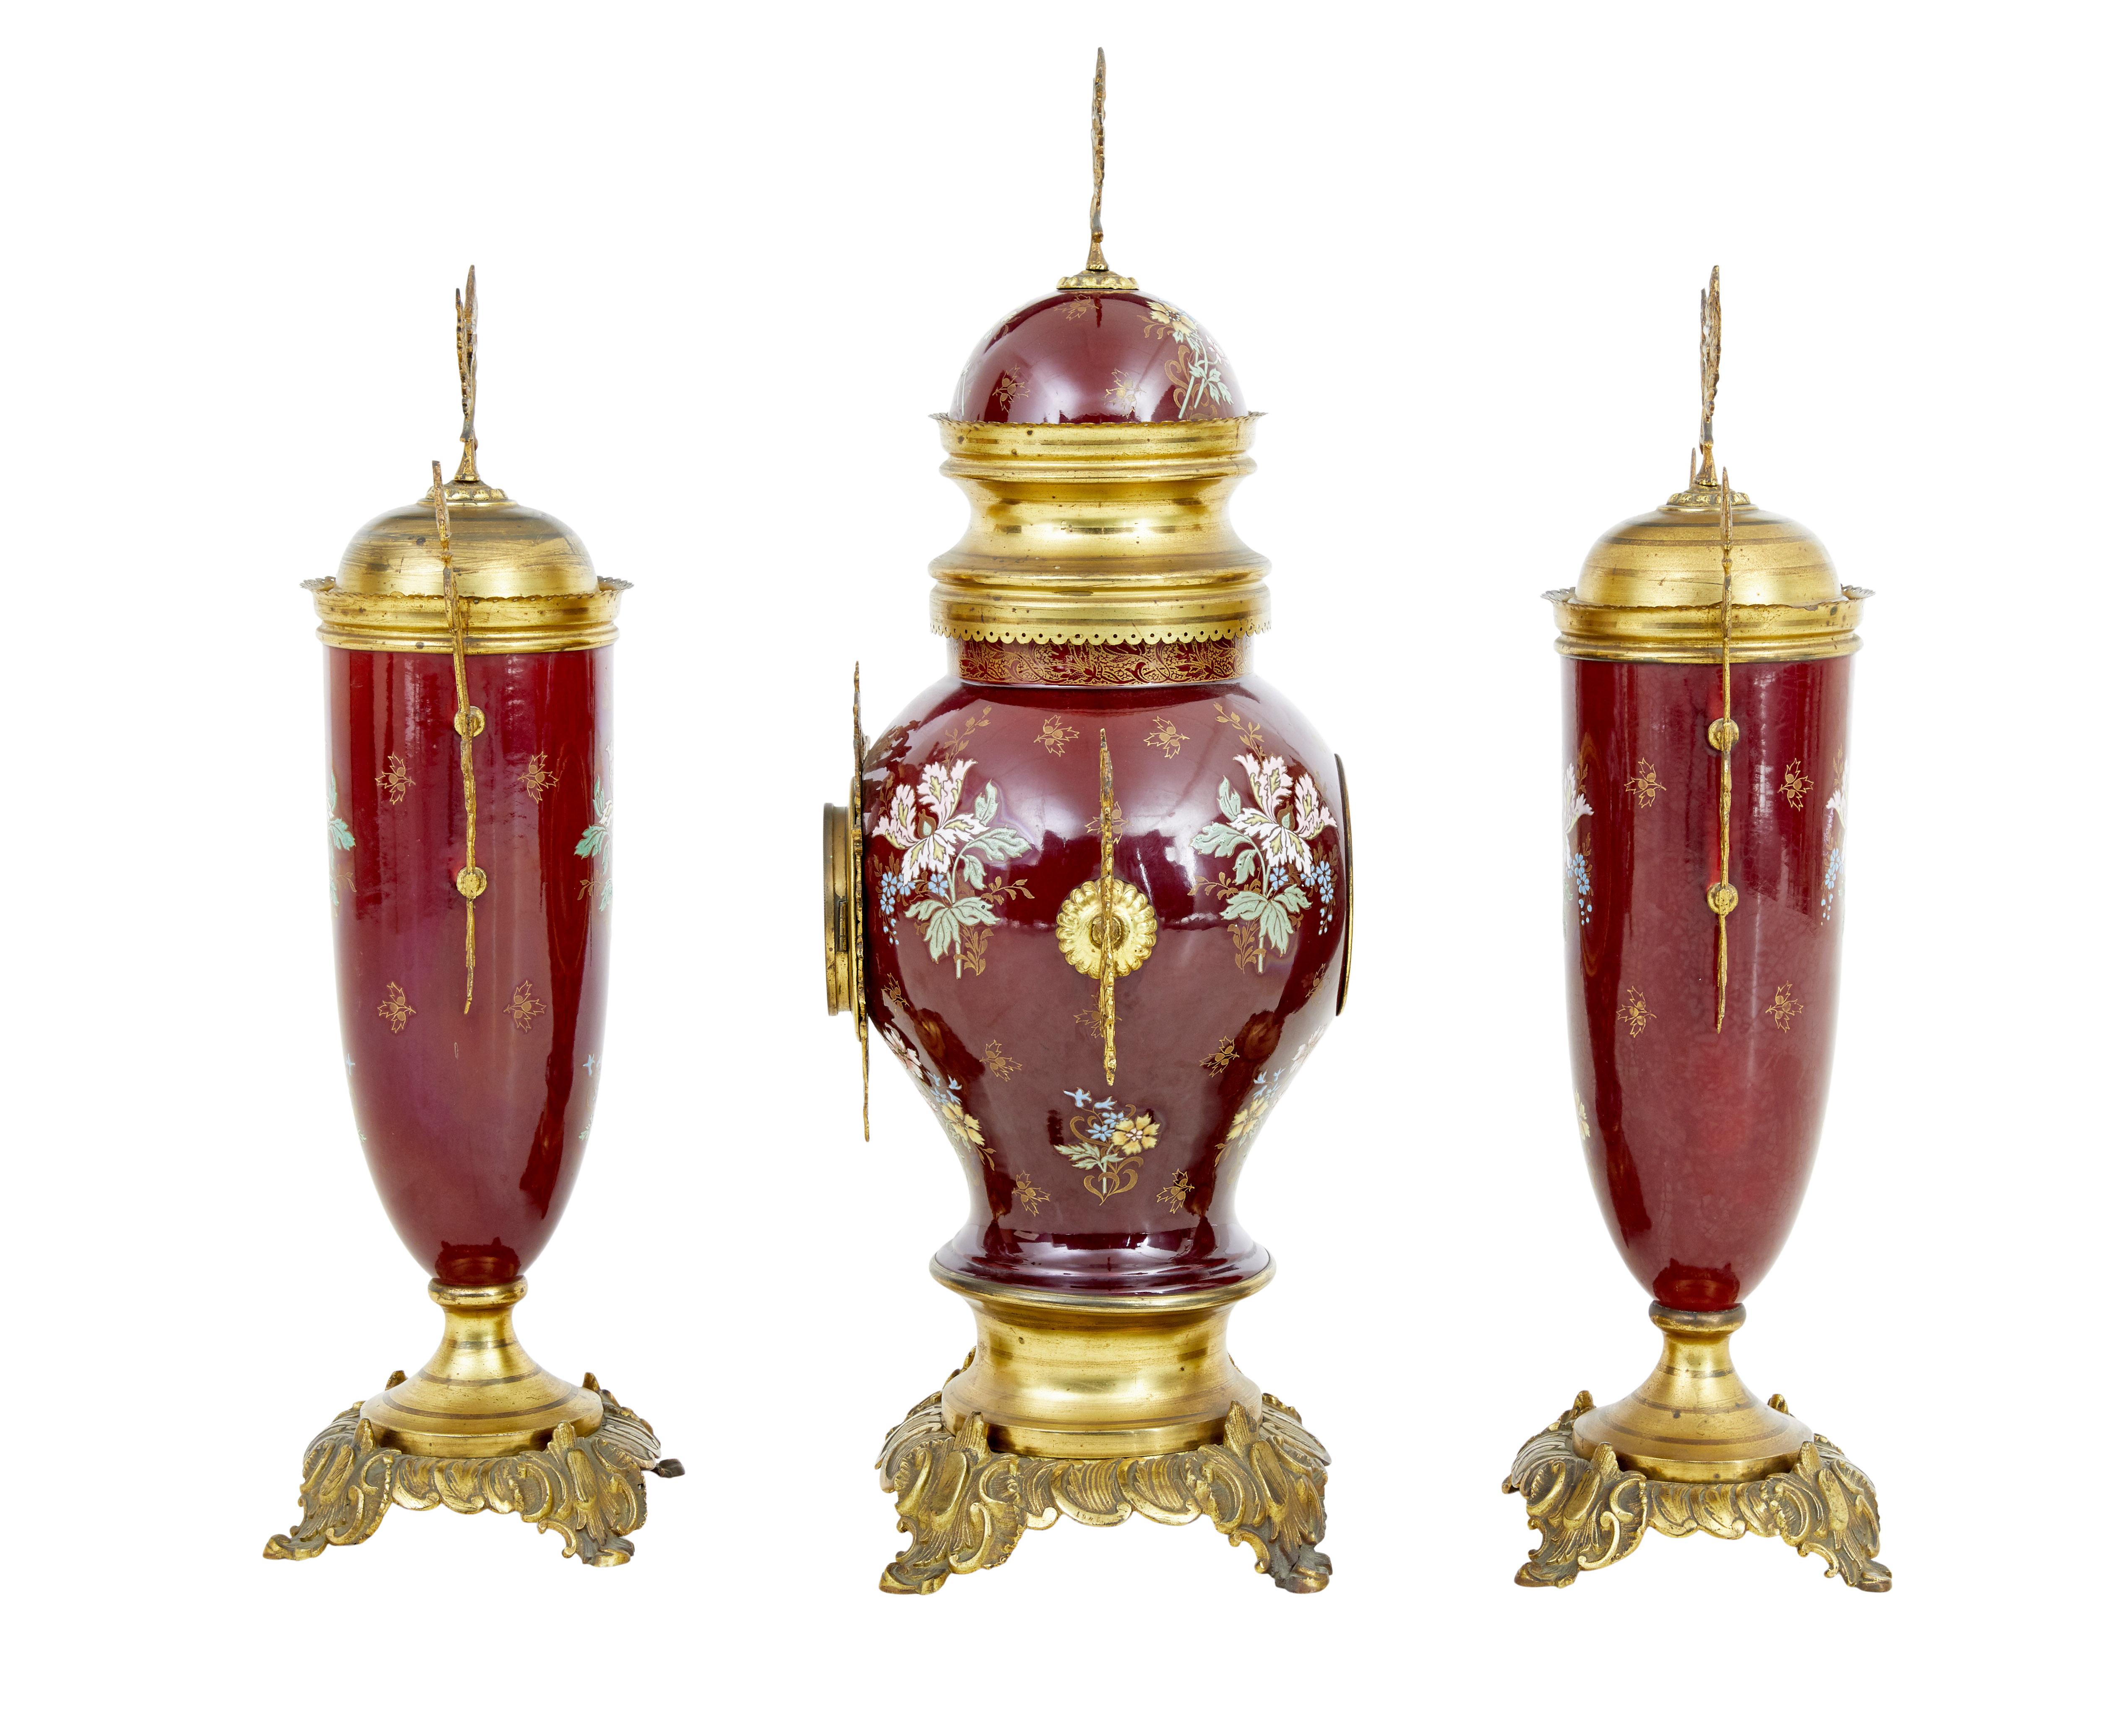 Service de garniture en faïence décorative française du XIXe siècle, vers 1880.

Bel exemple d'un ensemble de 3 pièces de garniture, avec des couverts peints à la main et décorés de montures en bronze doré. Horloge équipée de chiffres